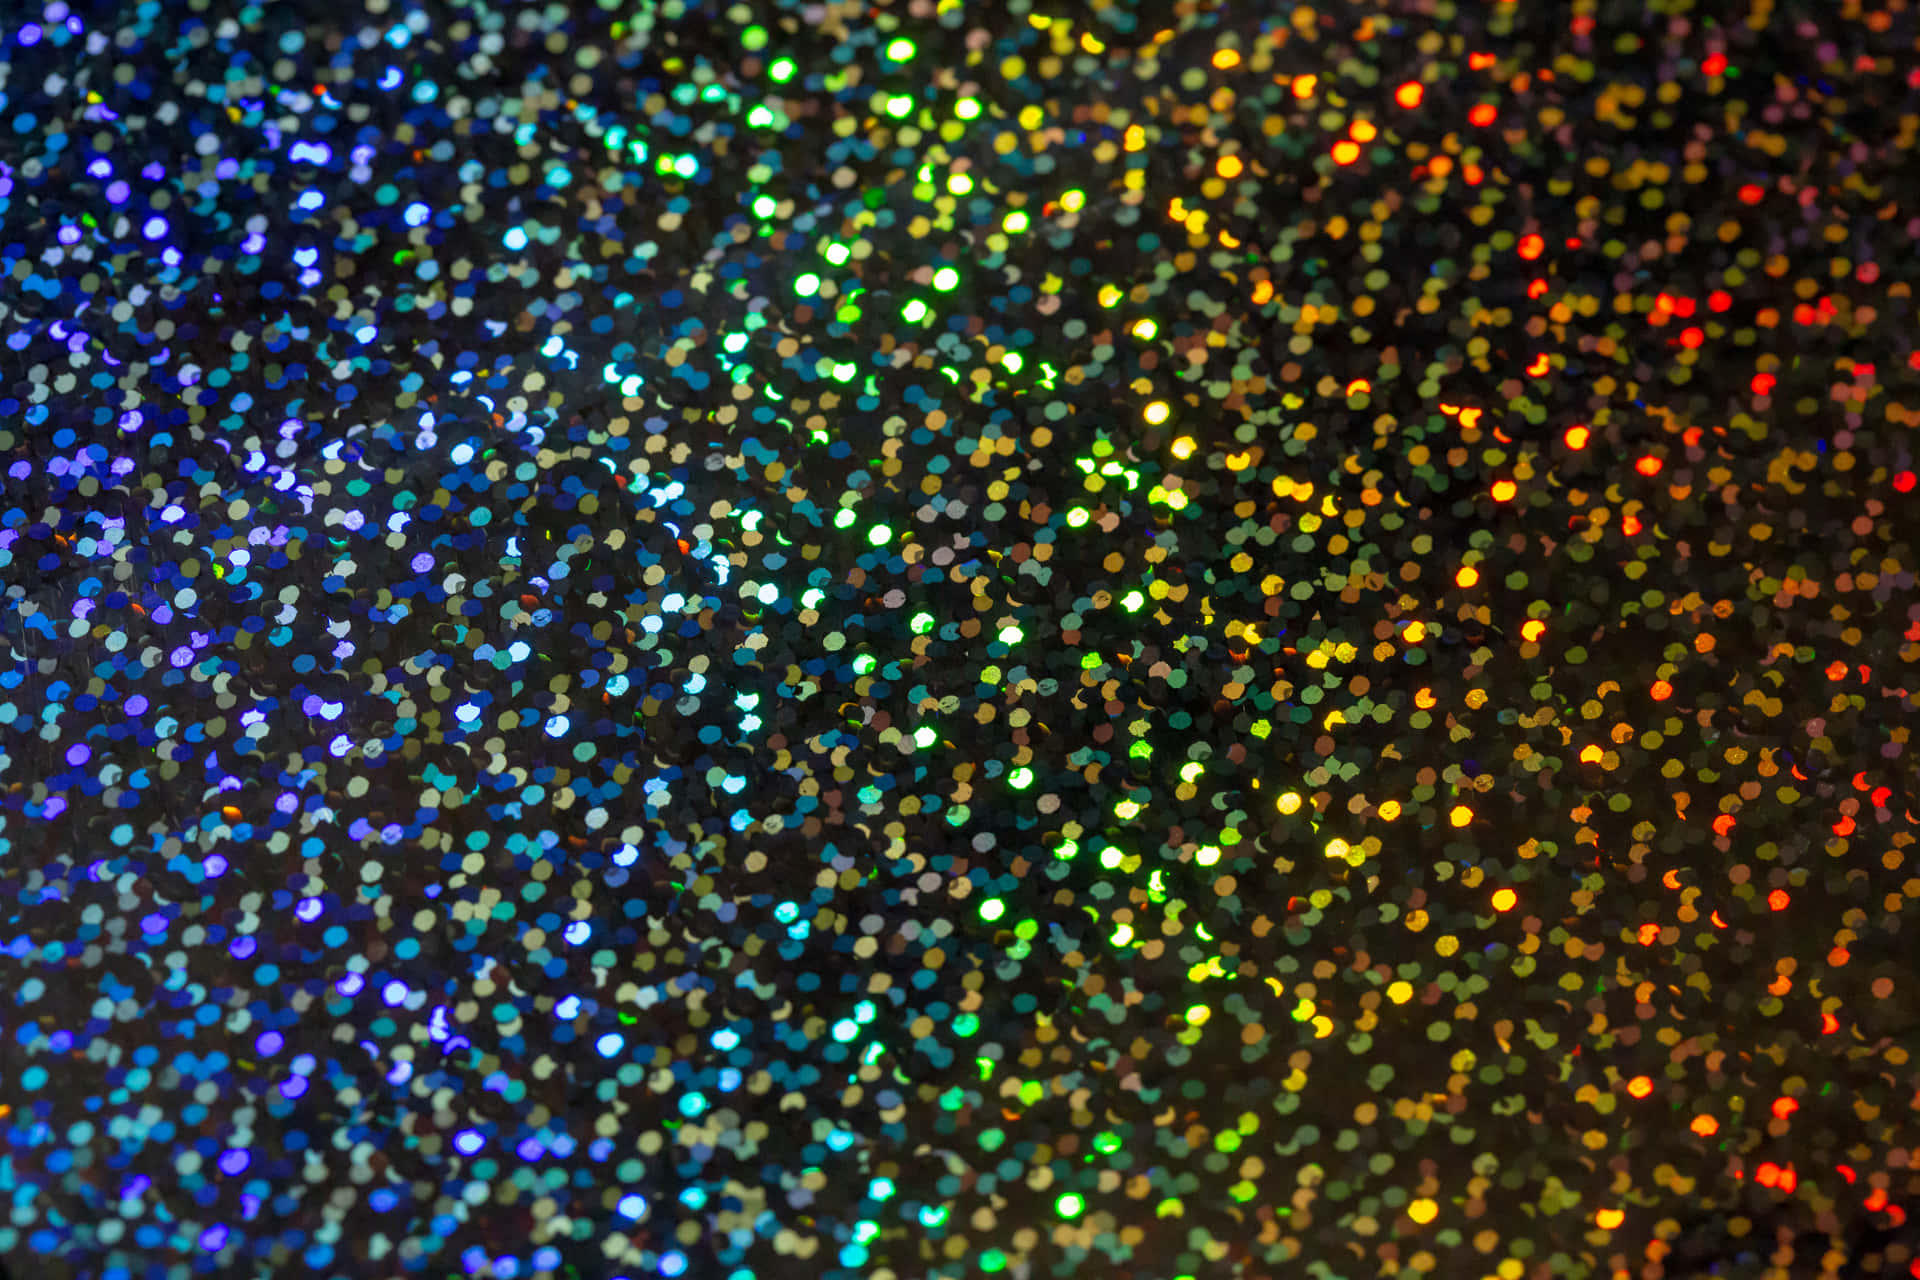 Umaimagem De Close-up De Uma Luz Colorida Em Forma De Arco-íris. Papel de Parede